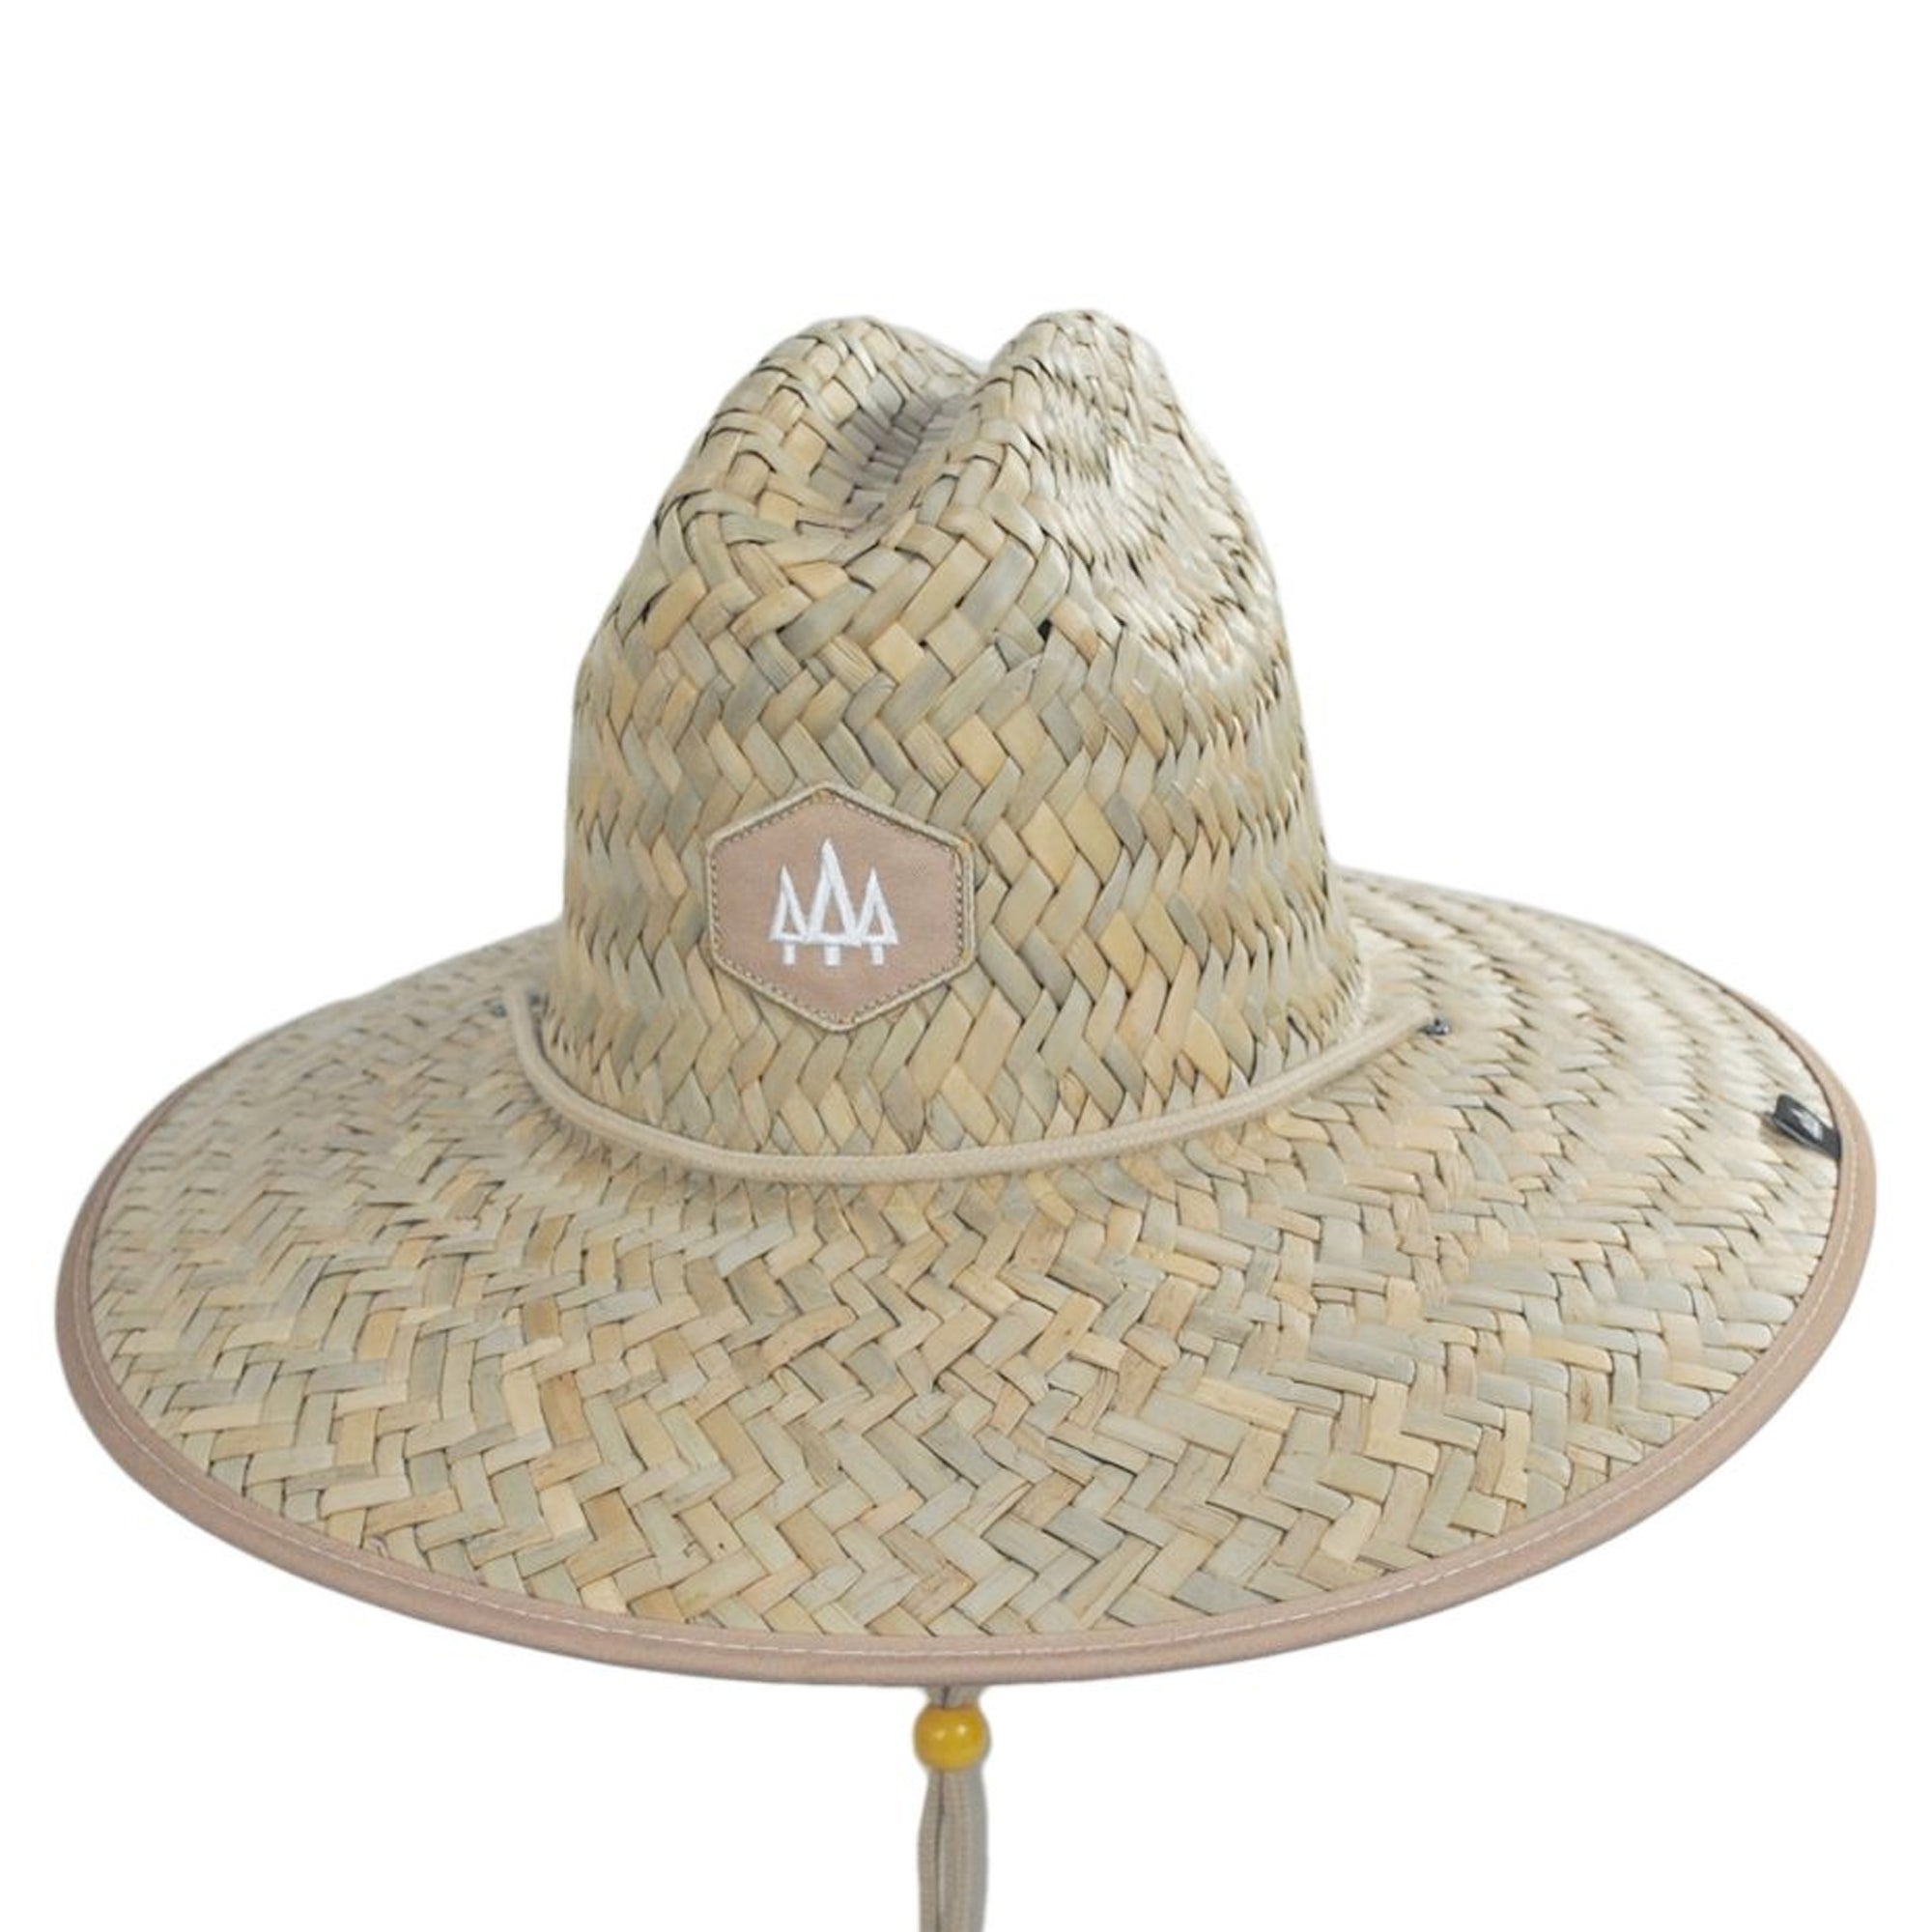 Men's Straw Hats  The Best Straw Hat Styles for Men – Hemlock Hat Co.